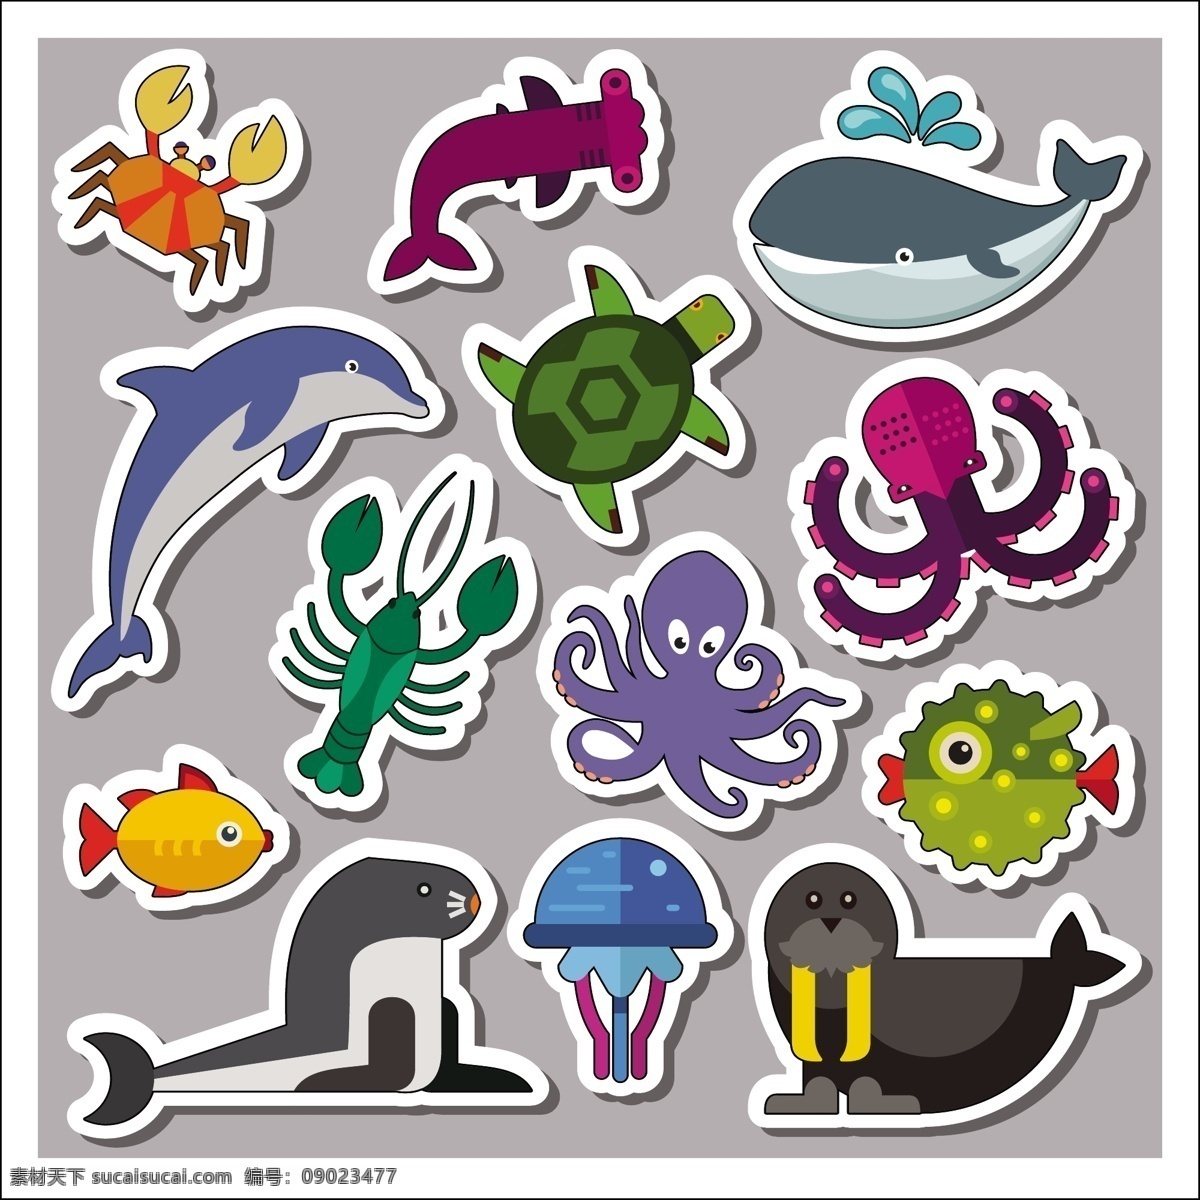 海洋 动物 贴纸 模板 海洋动物贴纸 动物贴纸模板 动物贴纸 海洋动物 可爱海洋动物 共享设计矢量 生物世界 海洋生物